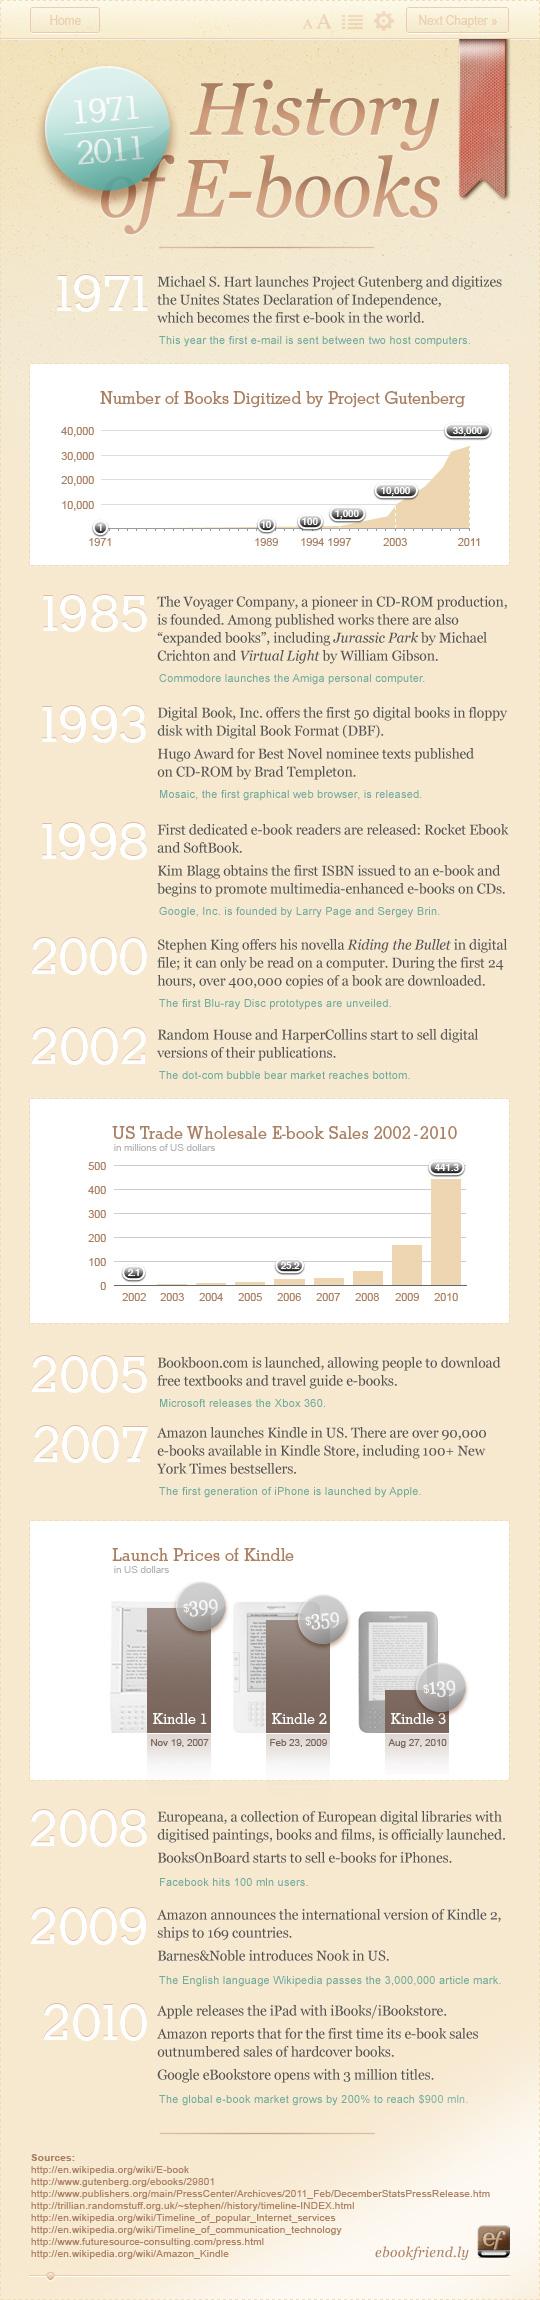 Infographie : l’histoire de l’ebook, 40 ans d’innovation